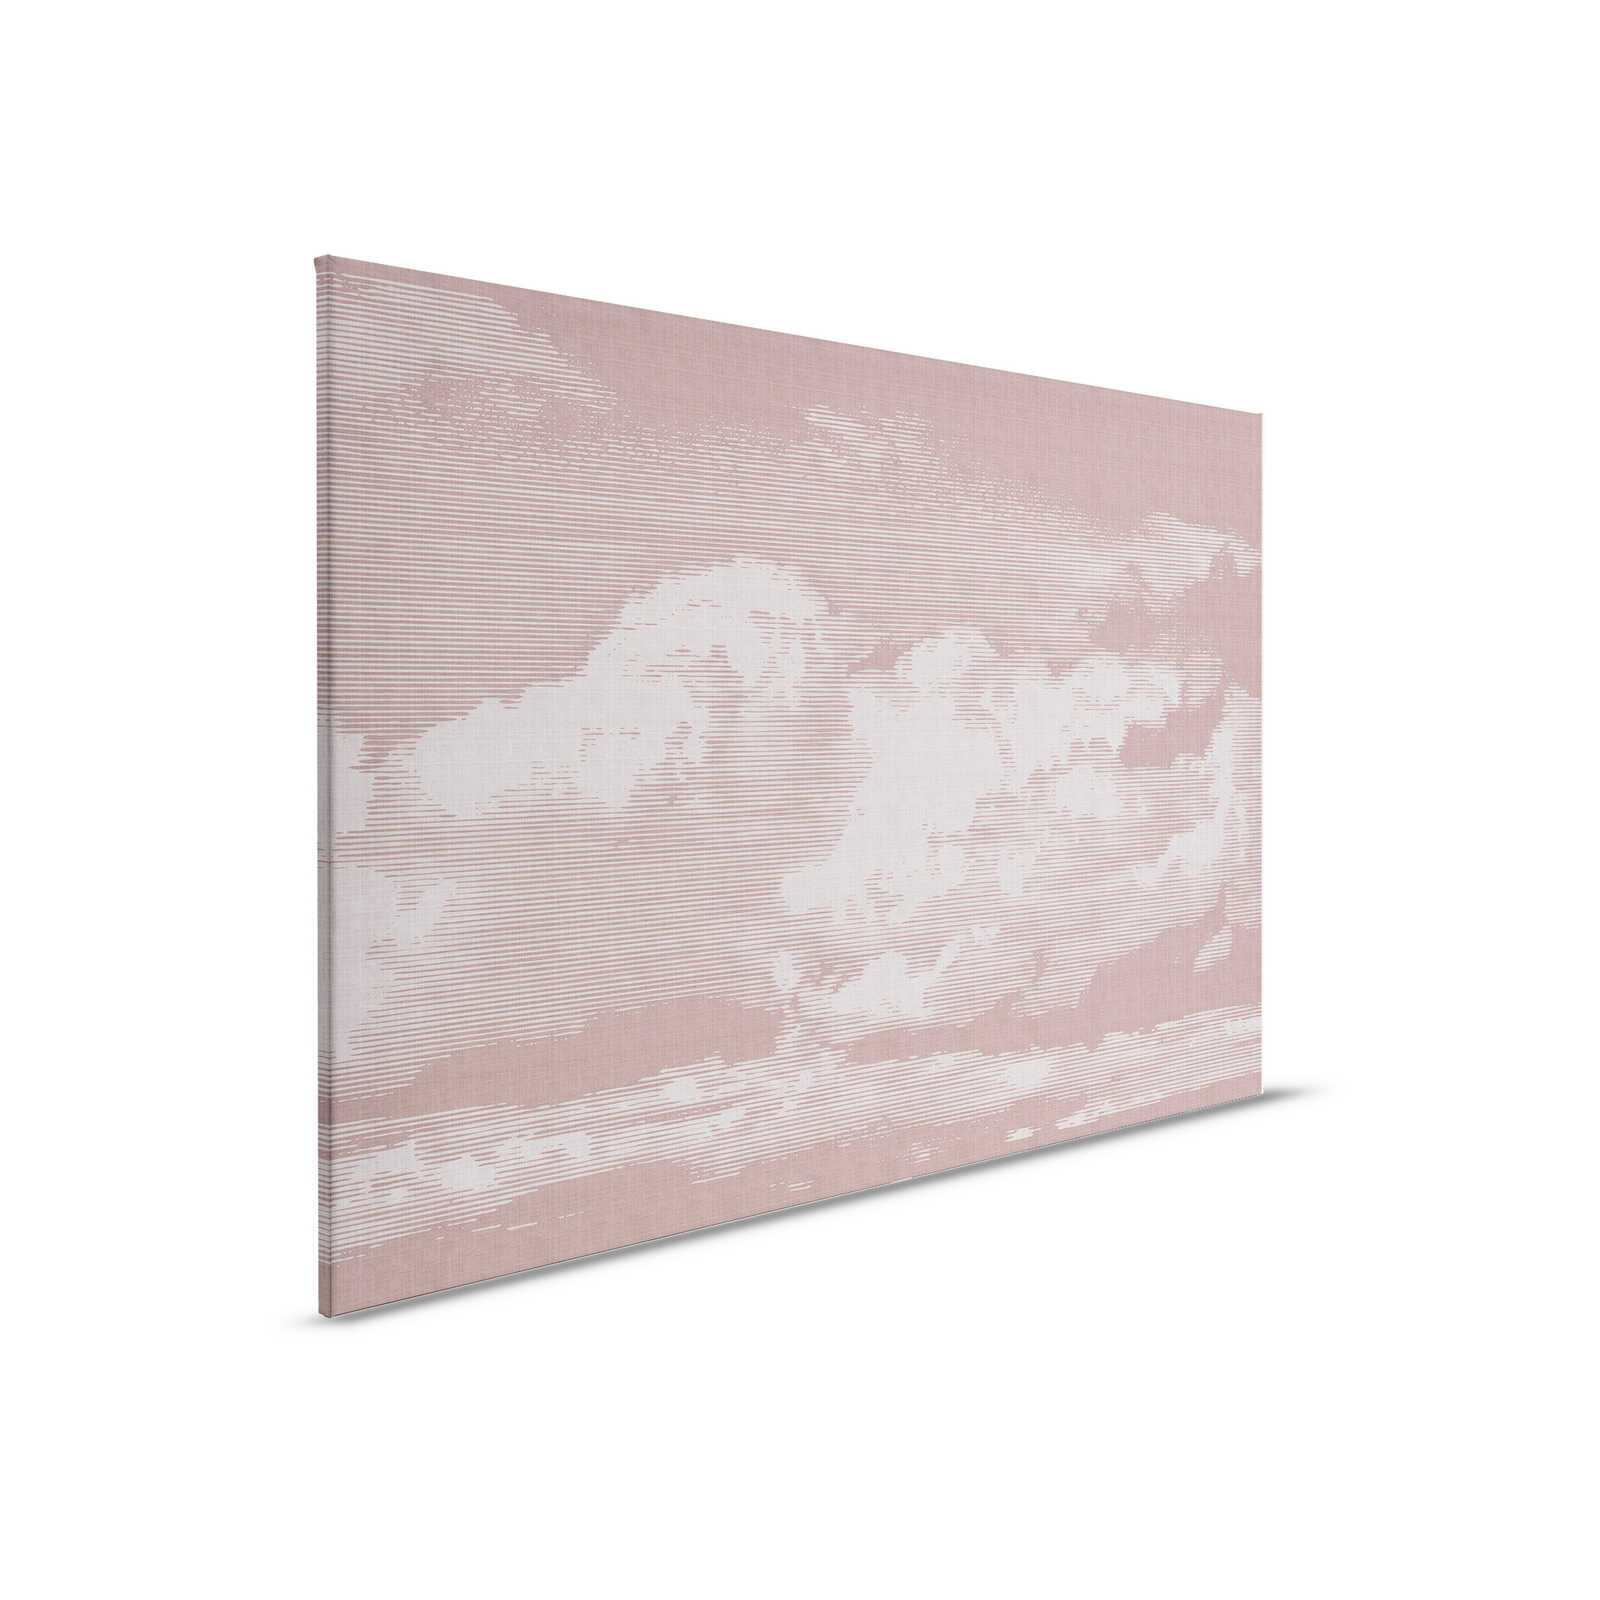 Nuvole 3 - Quadro su tela con motivo a nuvole - Aspetto naturale del lino - 0,90 m x 0,60 m
